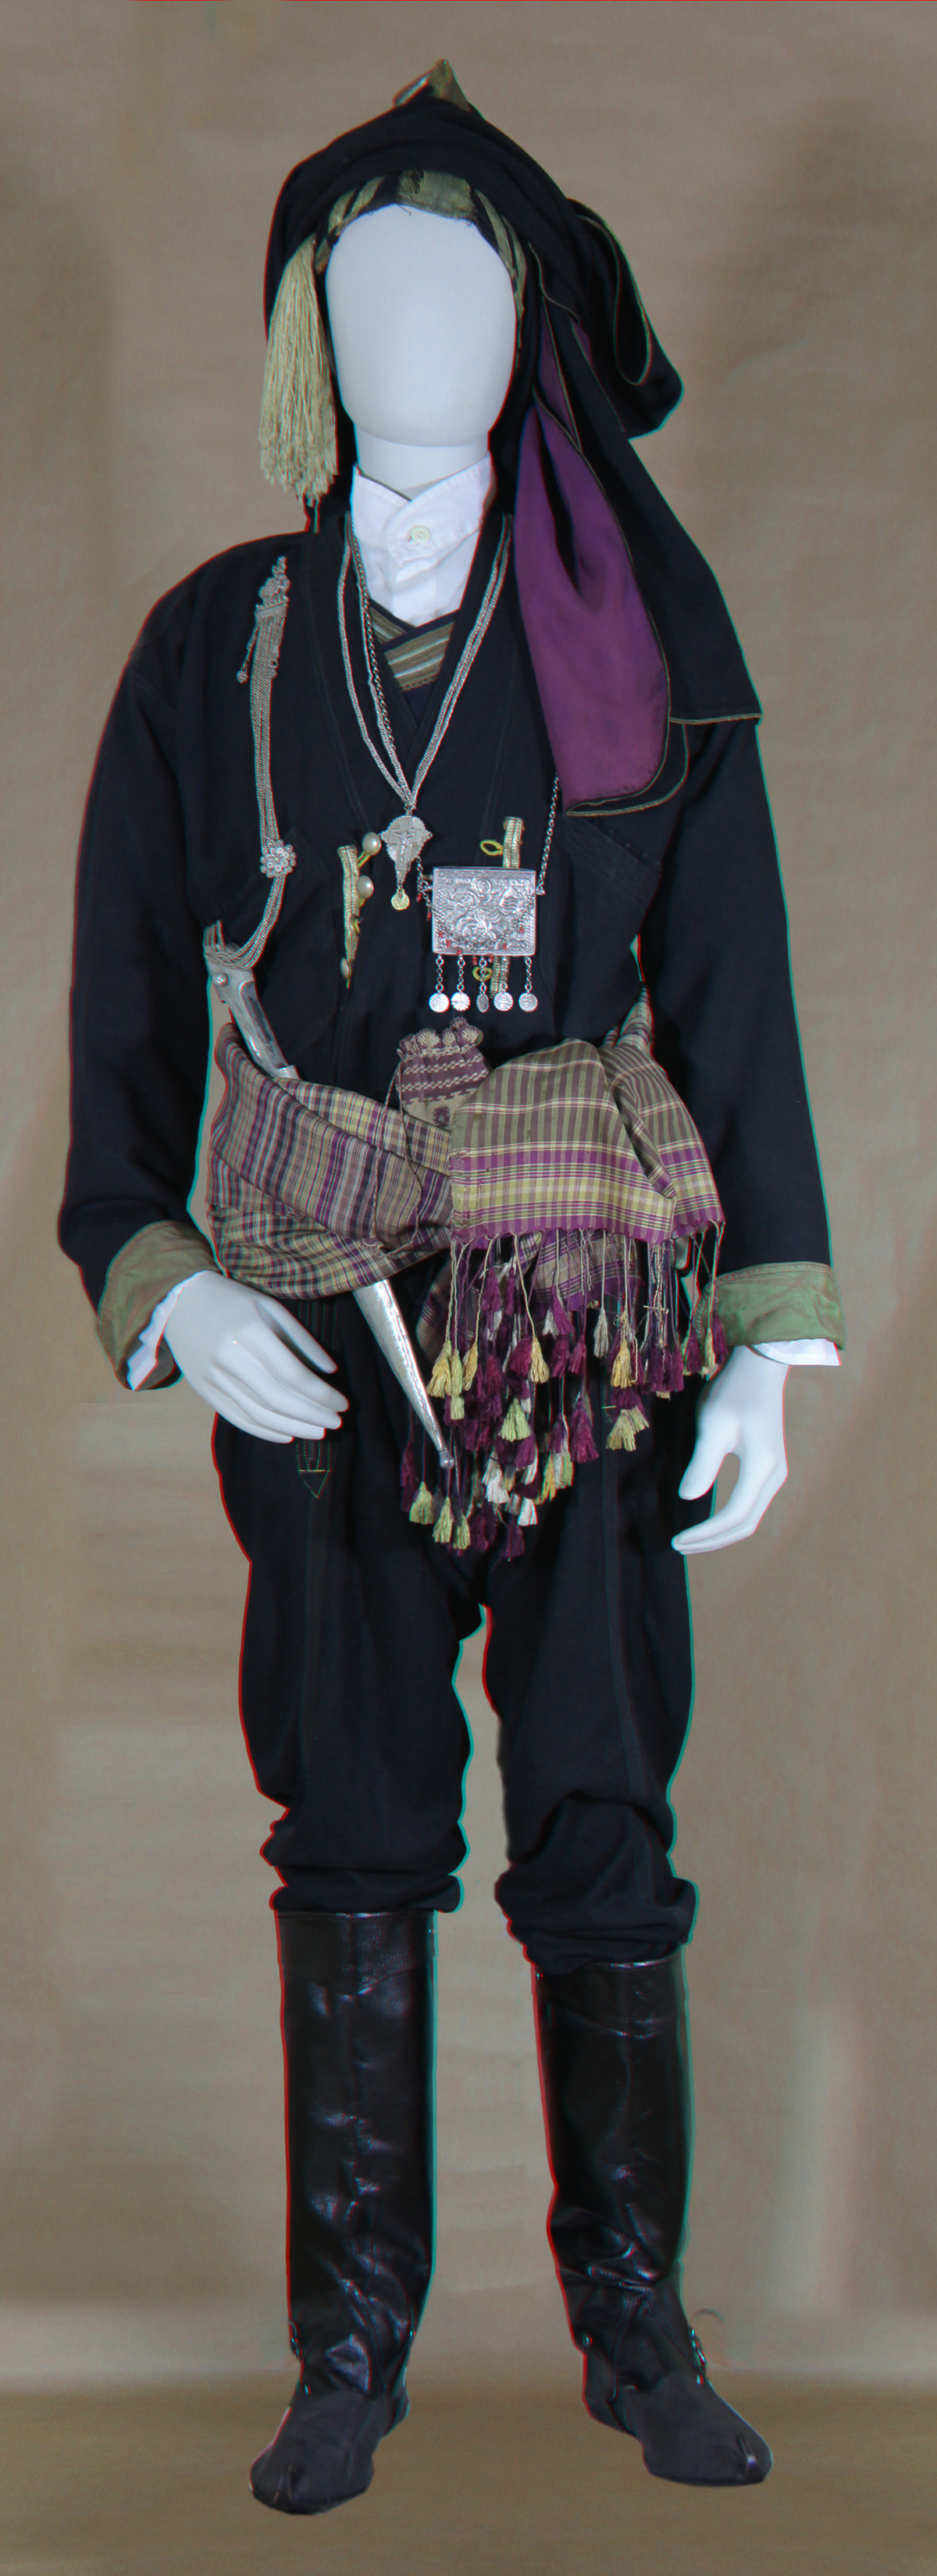 Κούκλα με ανδρική φορεσιά Ποντίου από Τραπεζούντα